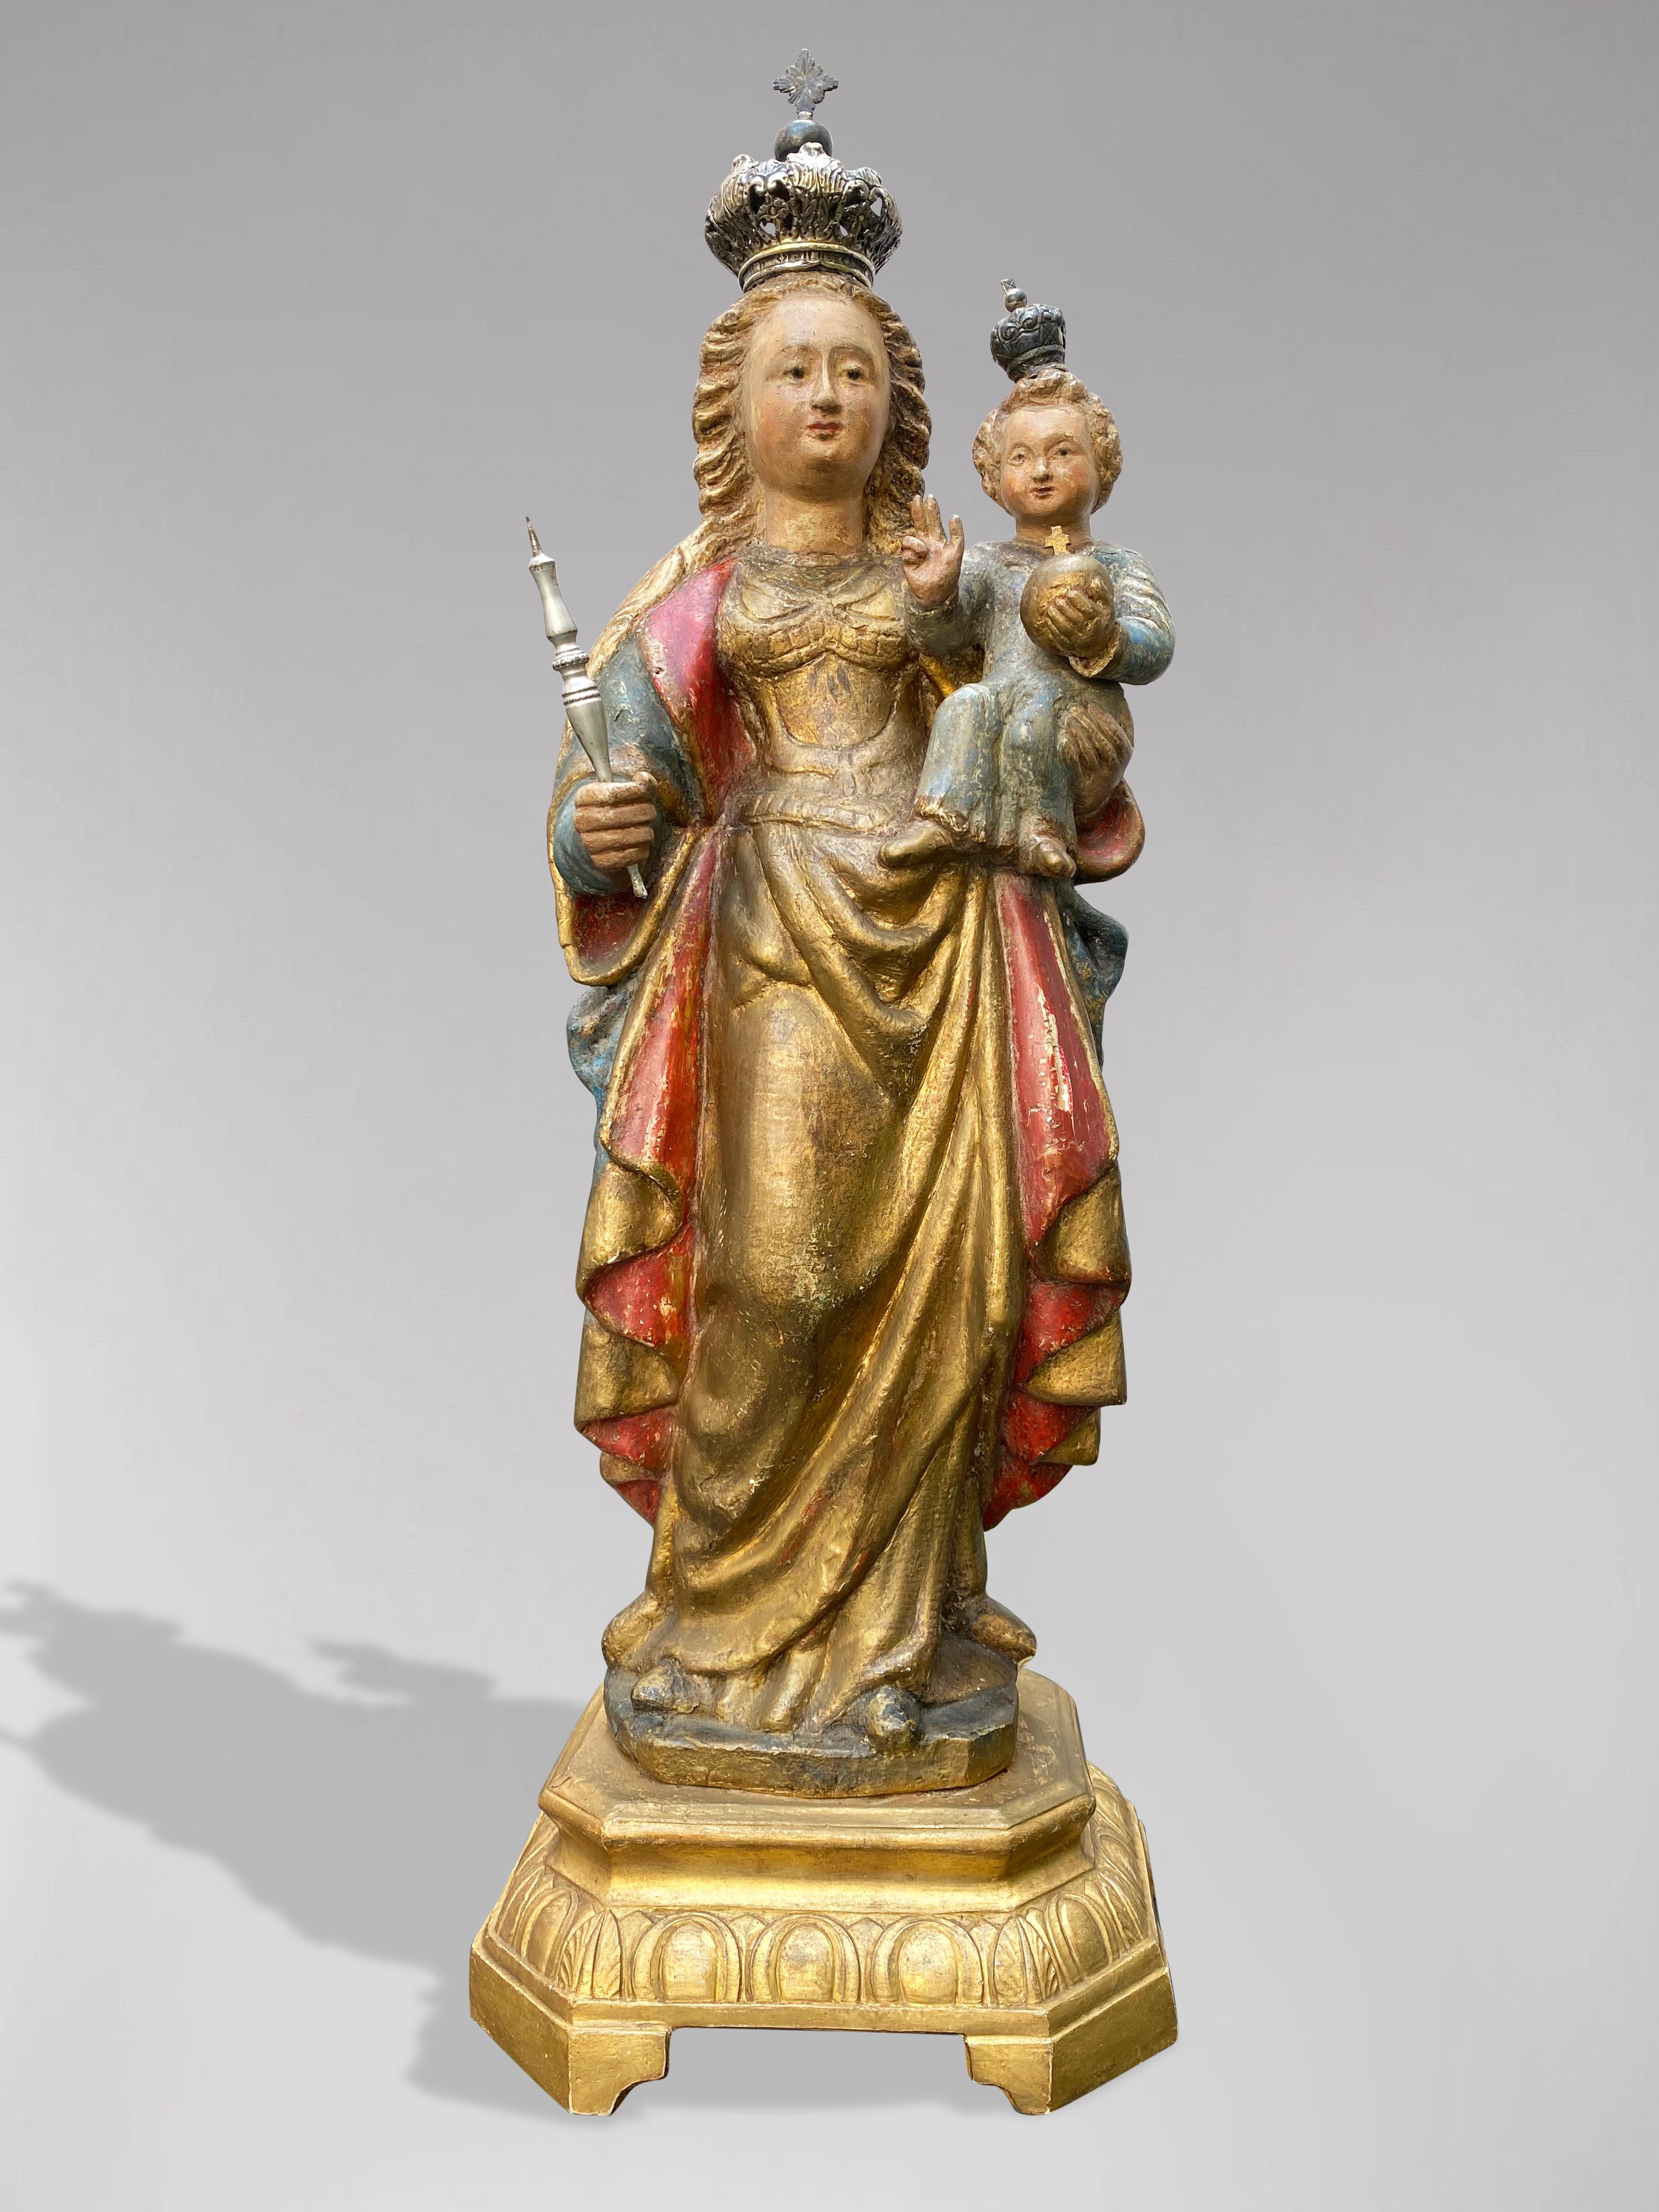 Unknown Figurative Sculpture – Eine flämische Statue der gekrönten Jungfrau Maria mit Jesuskind, 17. Jahrhundert